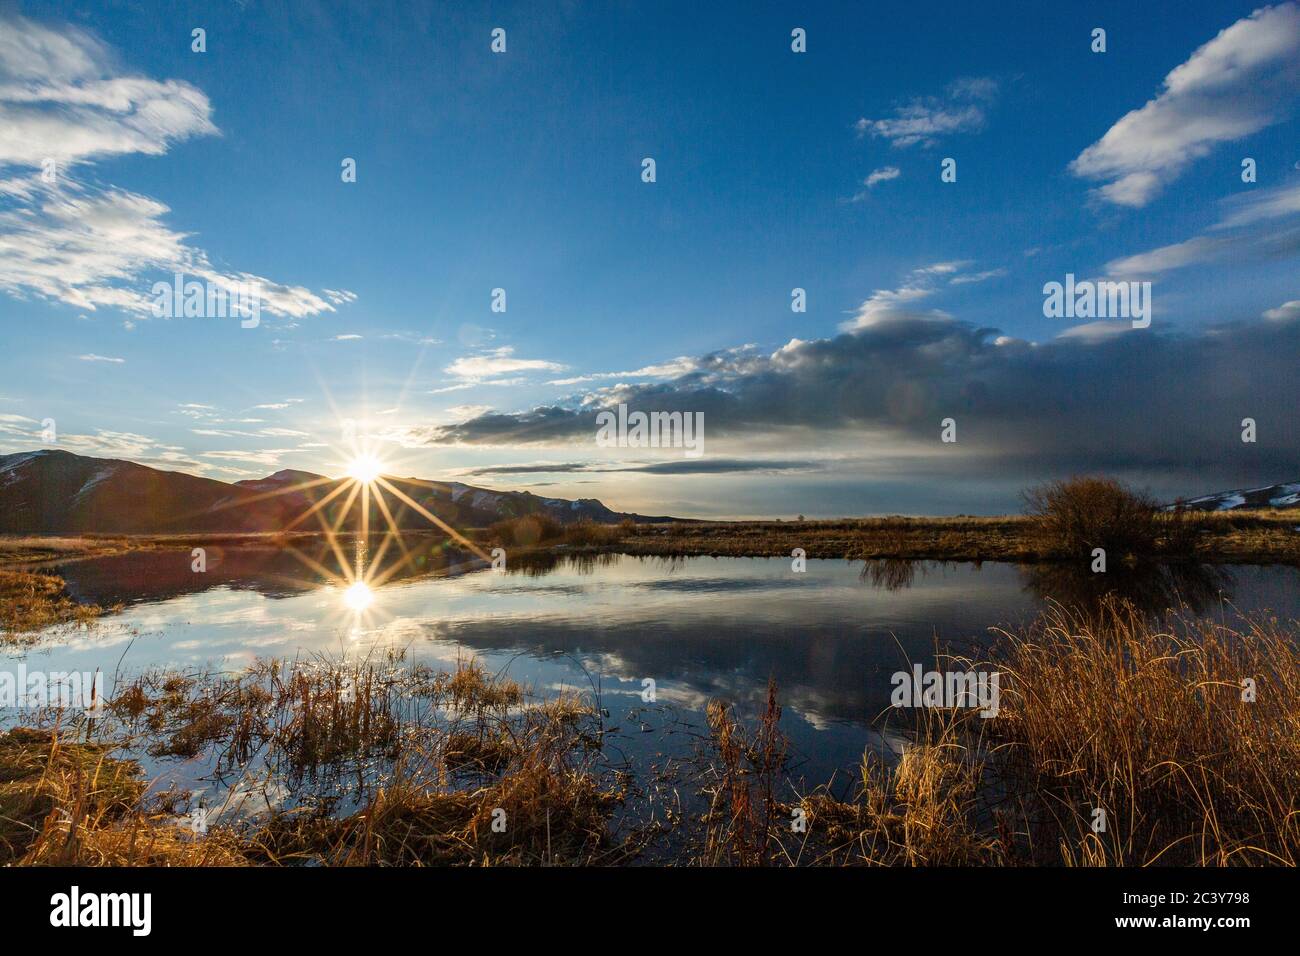 USA, Idaho, Sun Valley, Sunrise over mountains Stock Photo